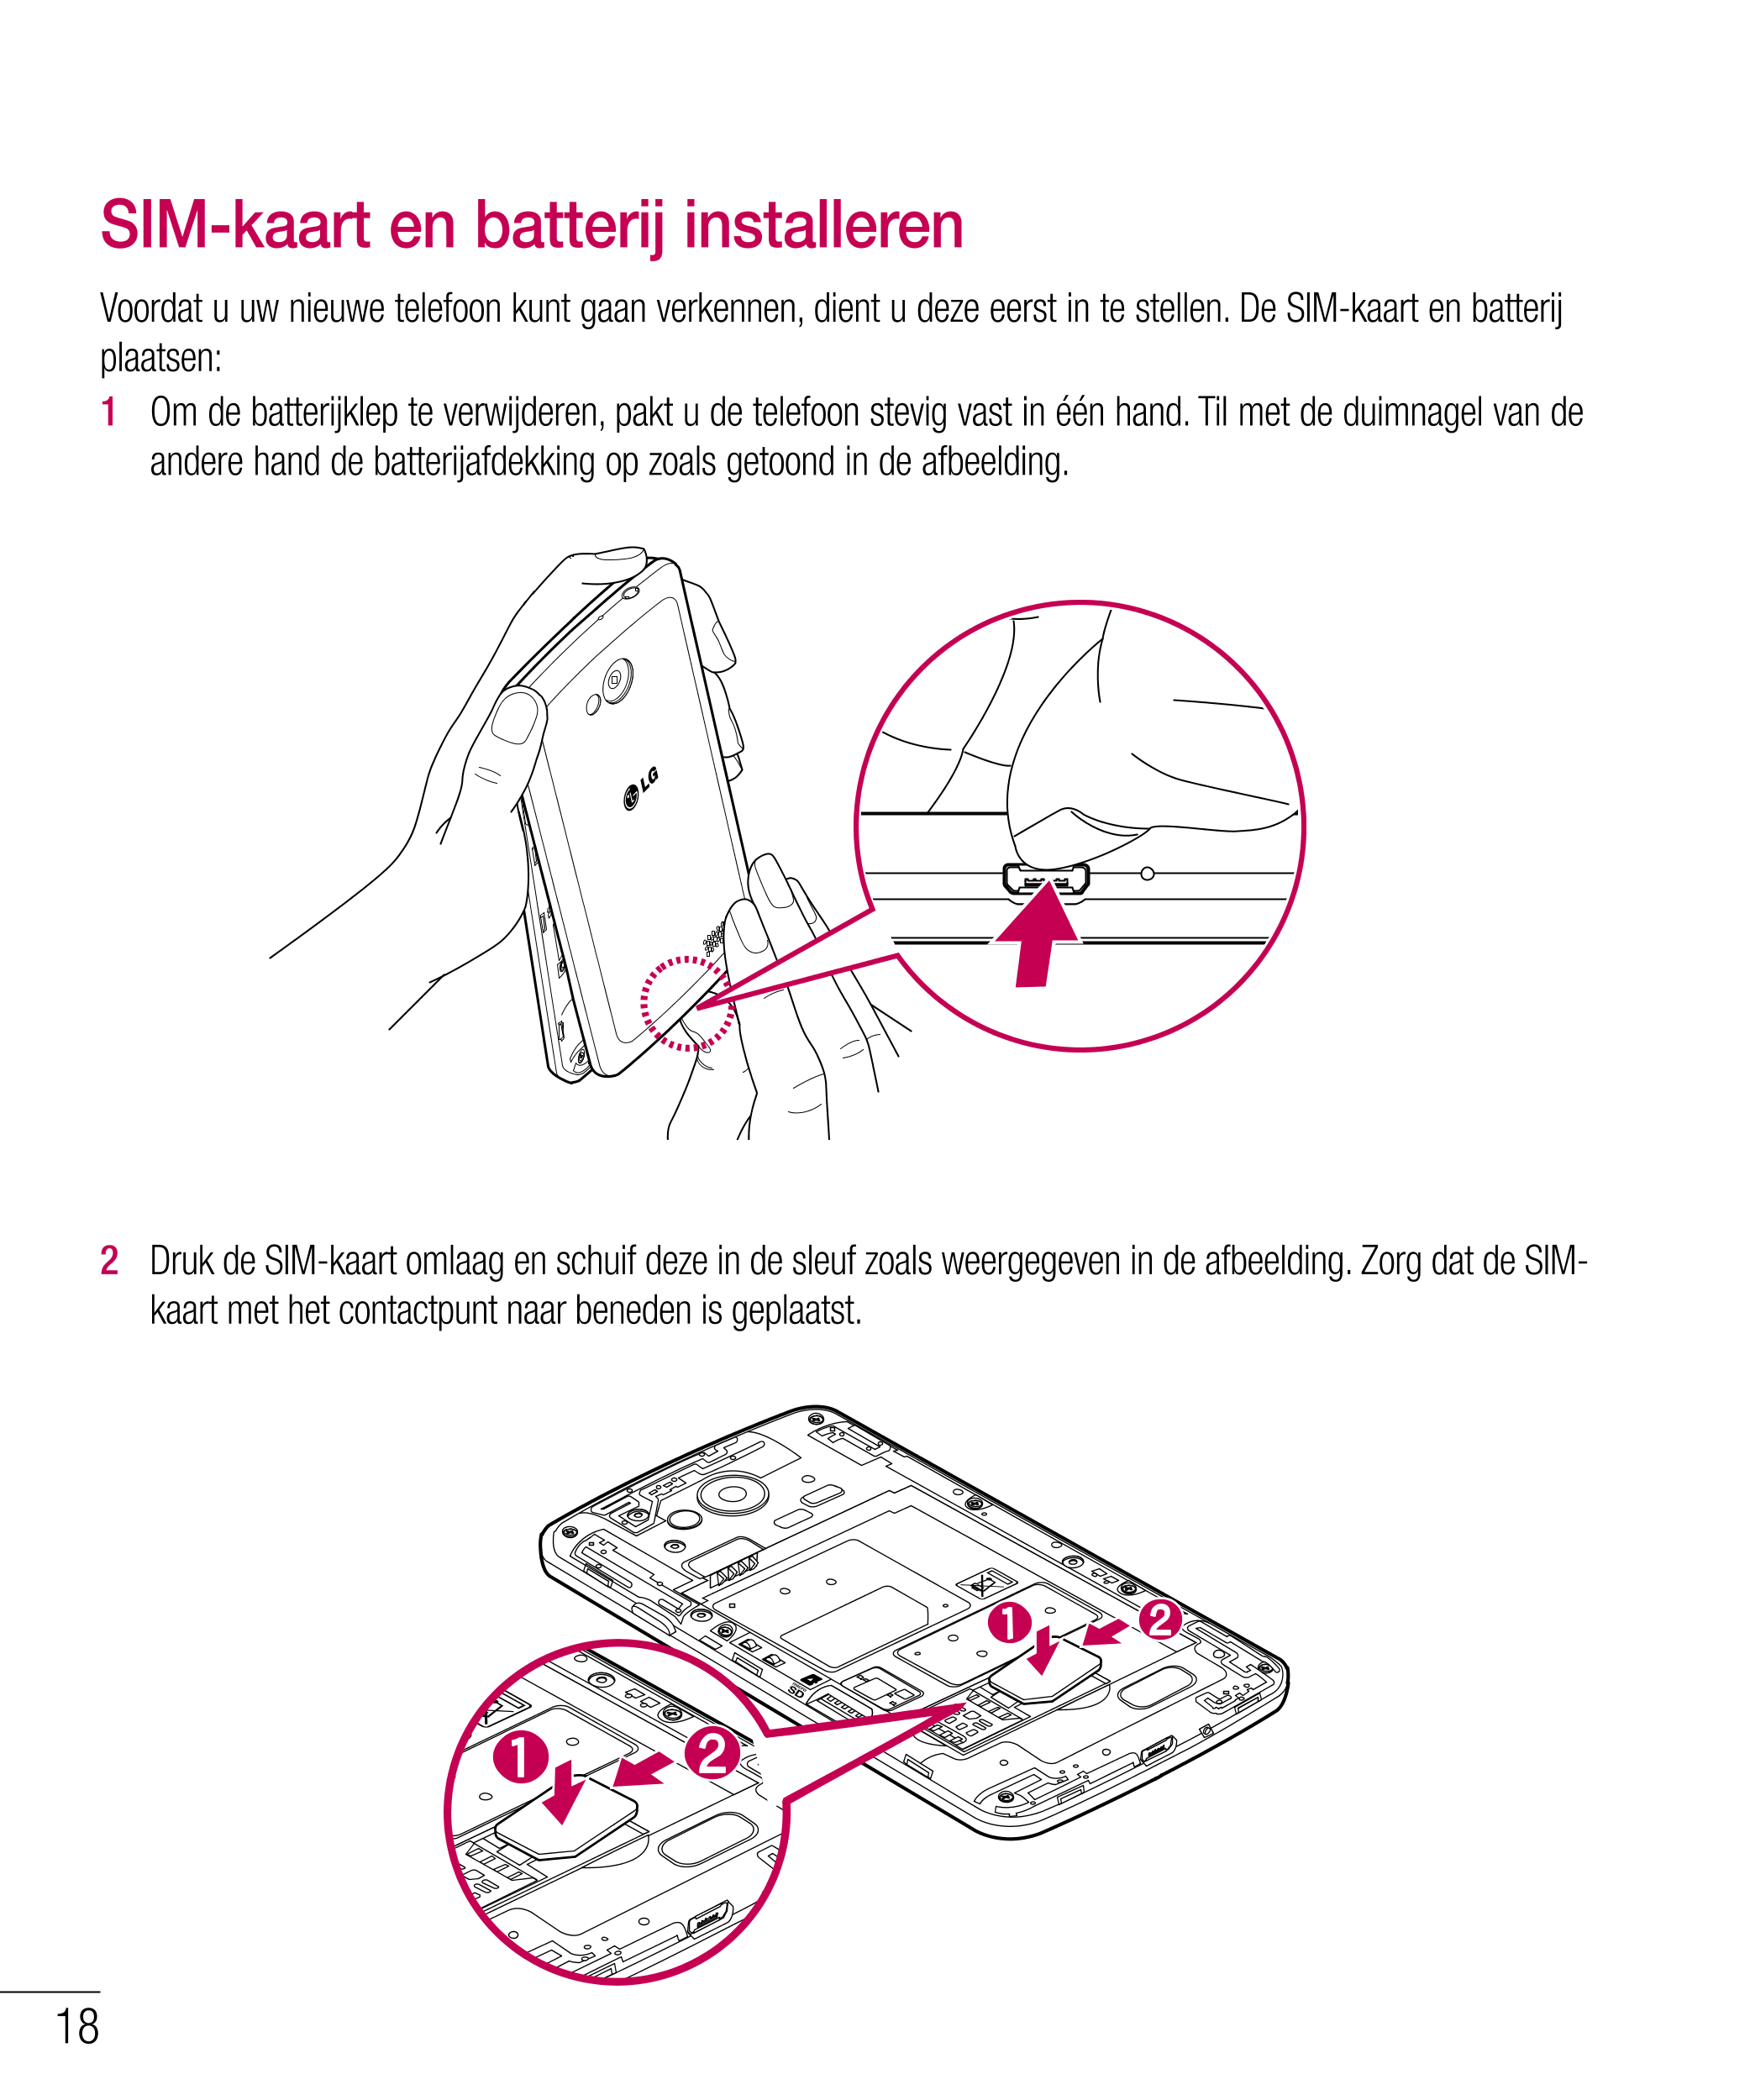 SIM-kaart en batterij installeren
Voordat u uw nieuwe telefoon kunt gaan verkennen, dient u deze eerst in te stellen. De SIM-kaa